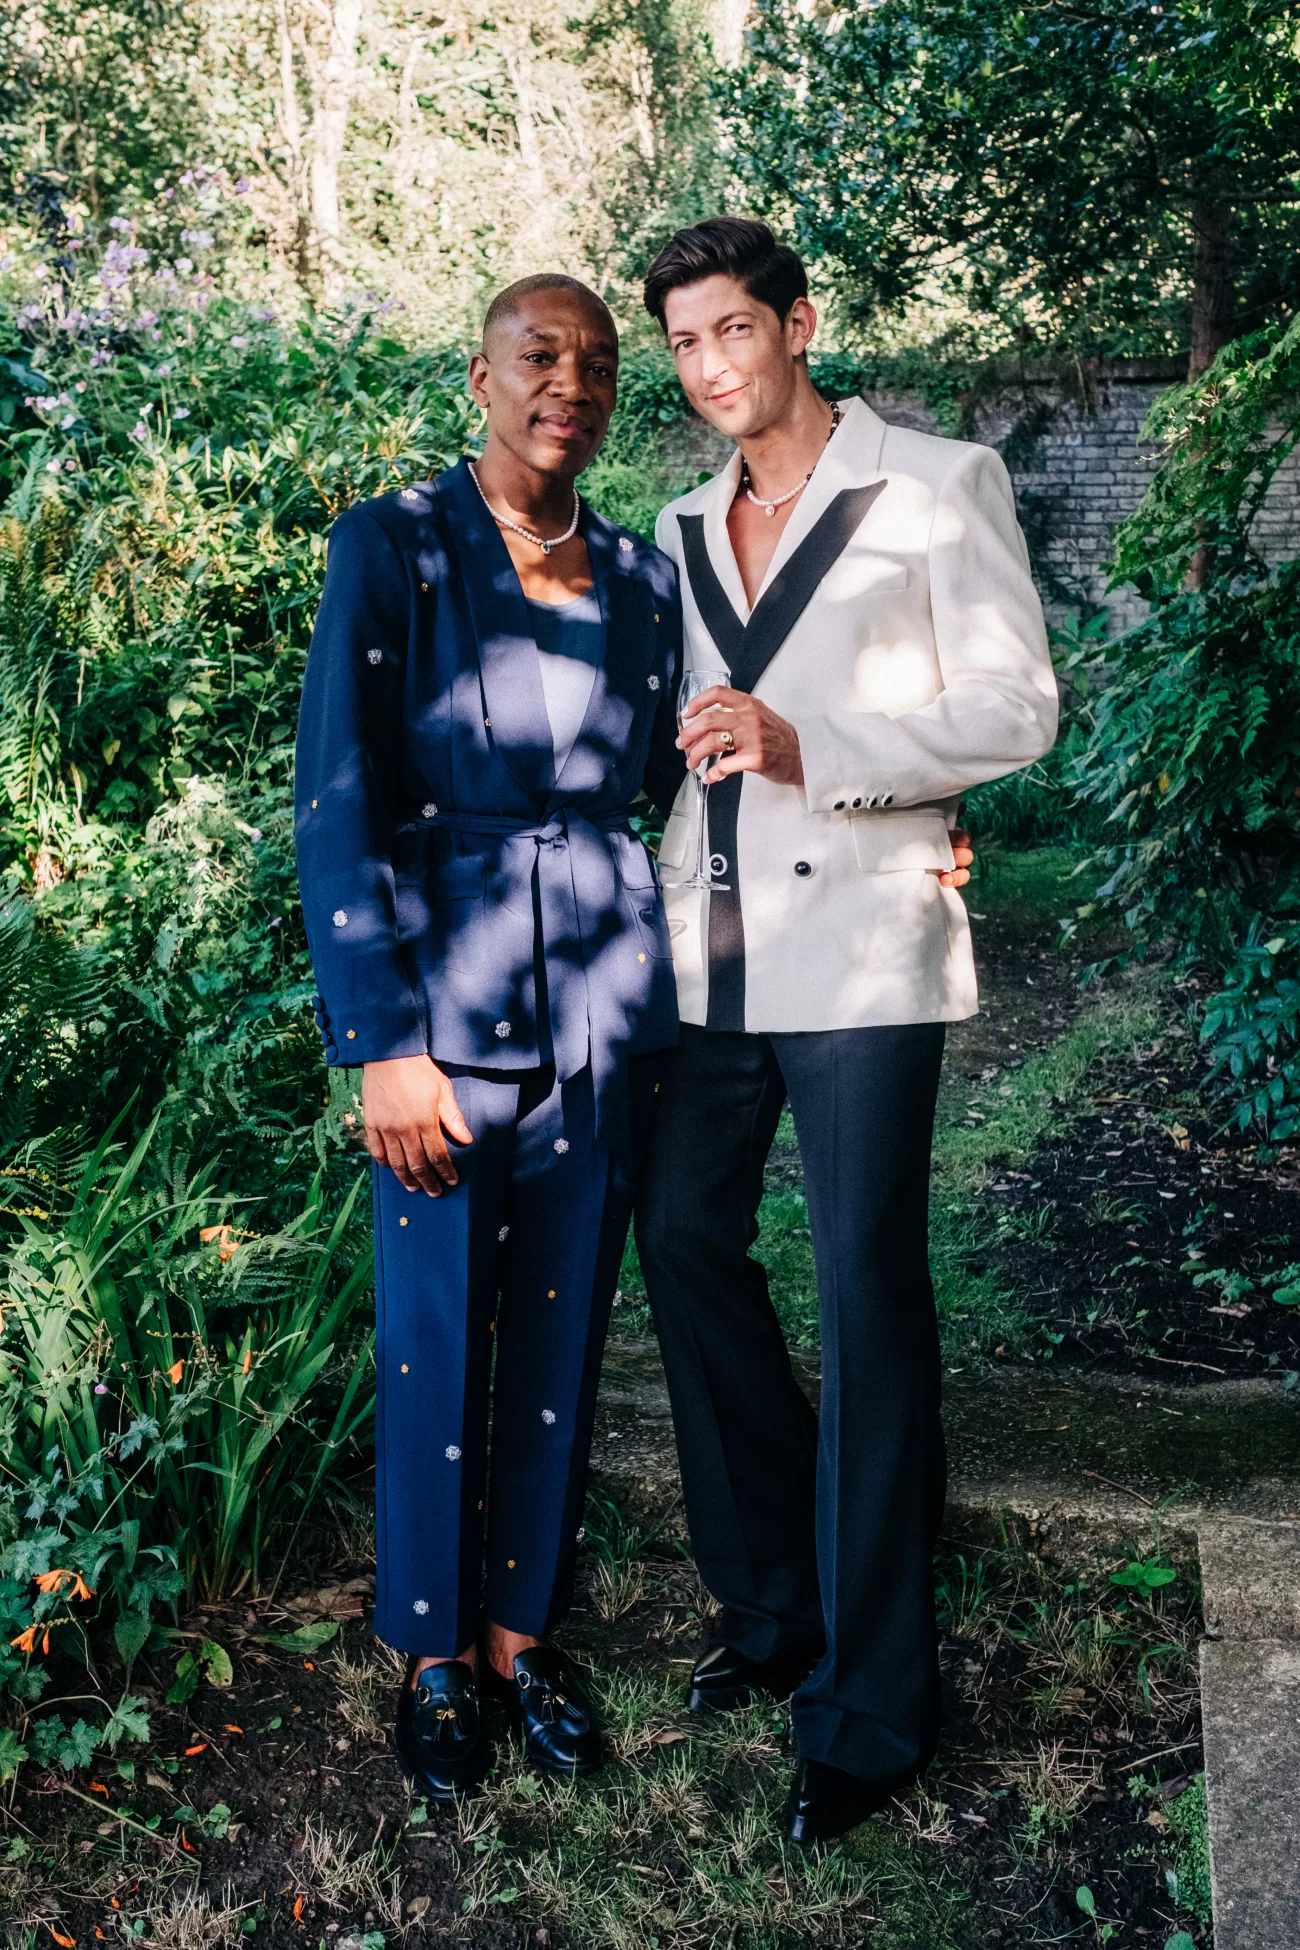 Editorial Style Wedding Photography in a secret walled garden Gay Wedding LGBTQ